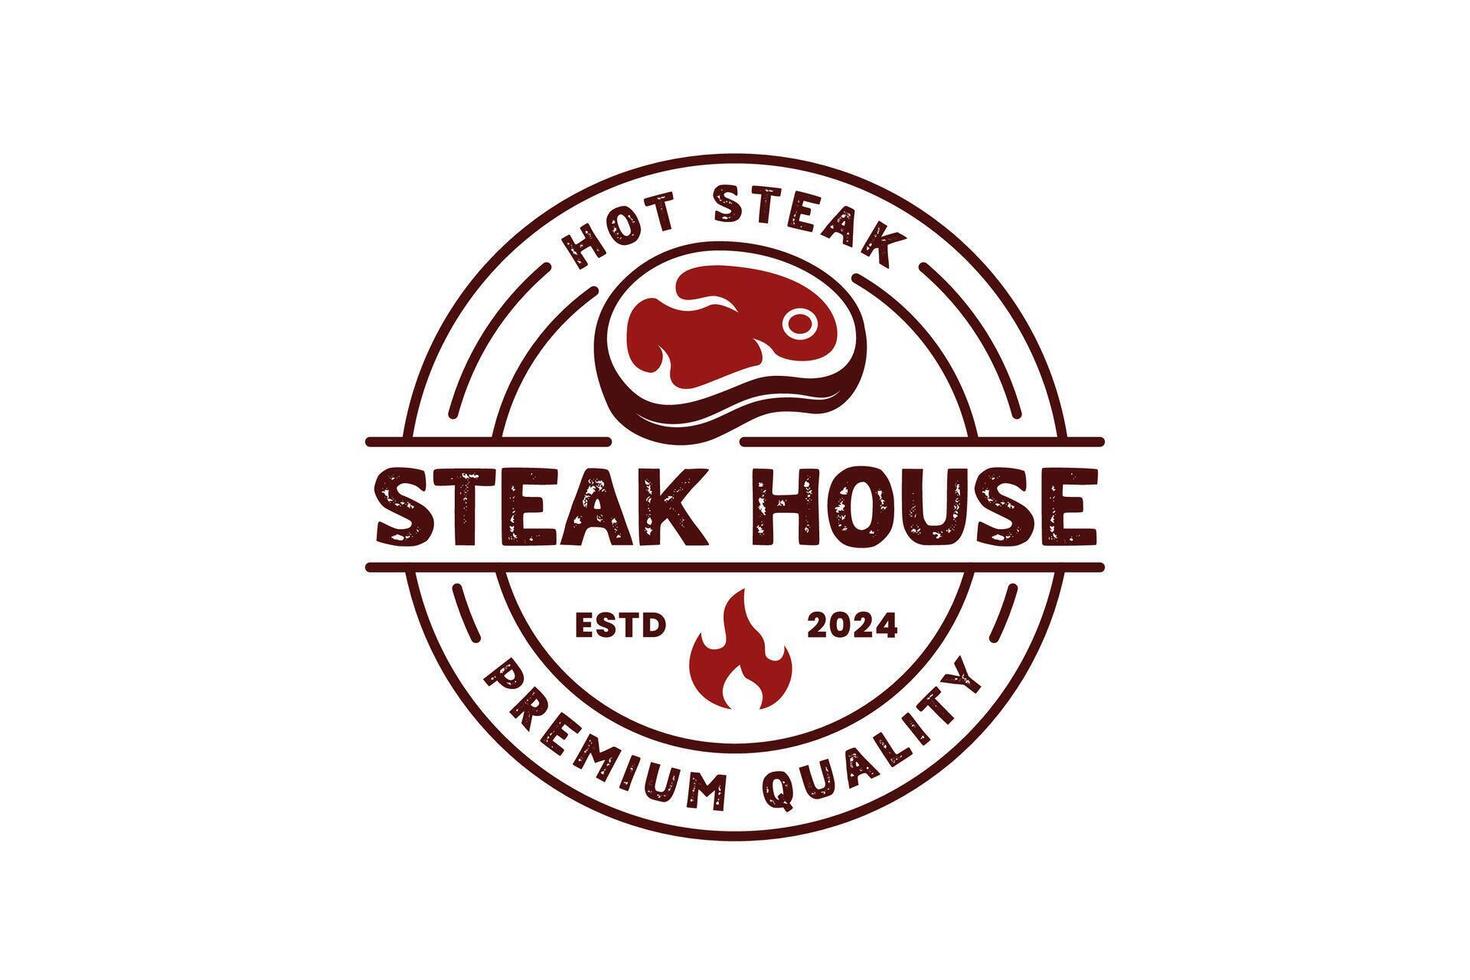 rustiek bbq rooster logo of gegrild barbecue steak huis insigne logo postzegel in wijnoogst retro stijl vector